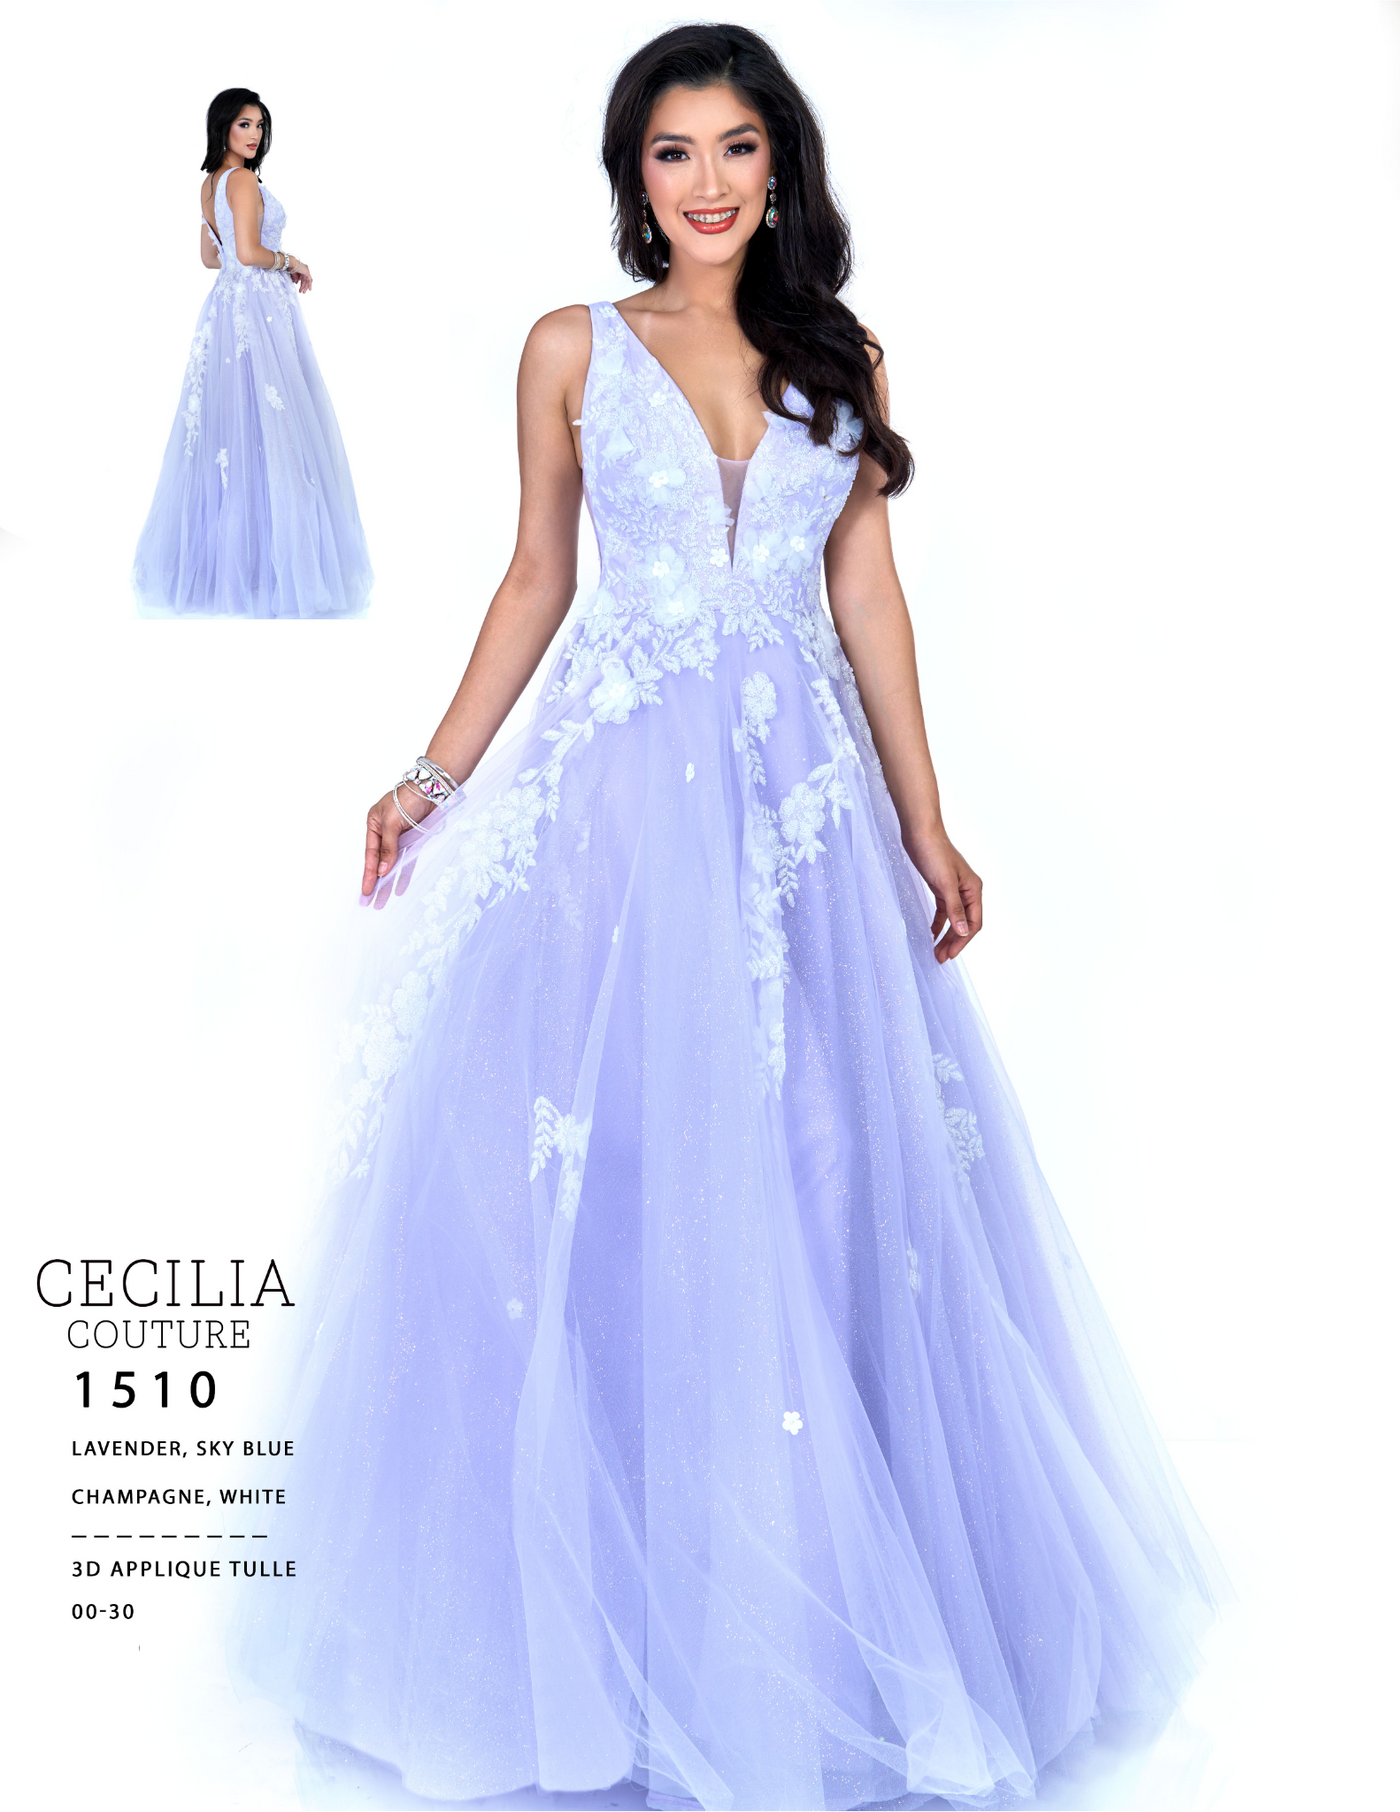 Cecilia Couture 1510 Lavender Prom Dress